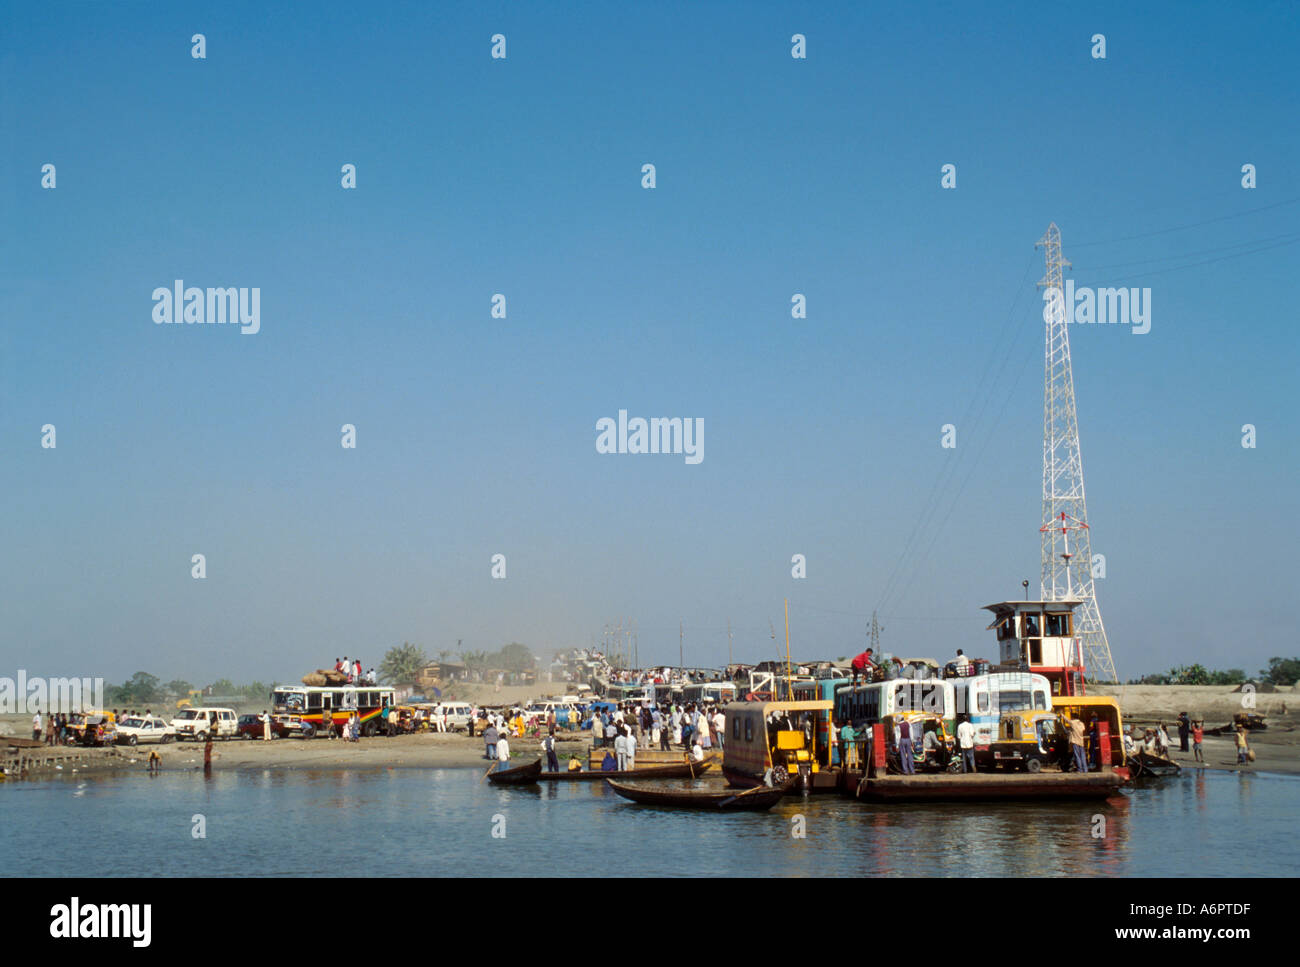 Un affollato traghetto fluviale con passeggeri e veicoli che atterrano sulla riva del fiume. Faridpur, Bangladesh Foto Stock